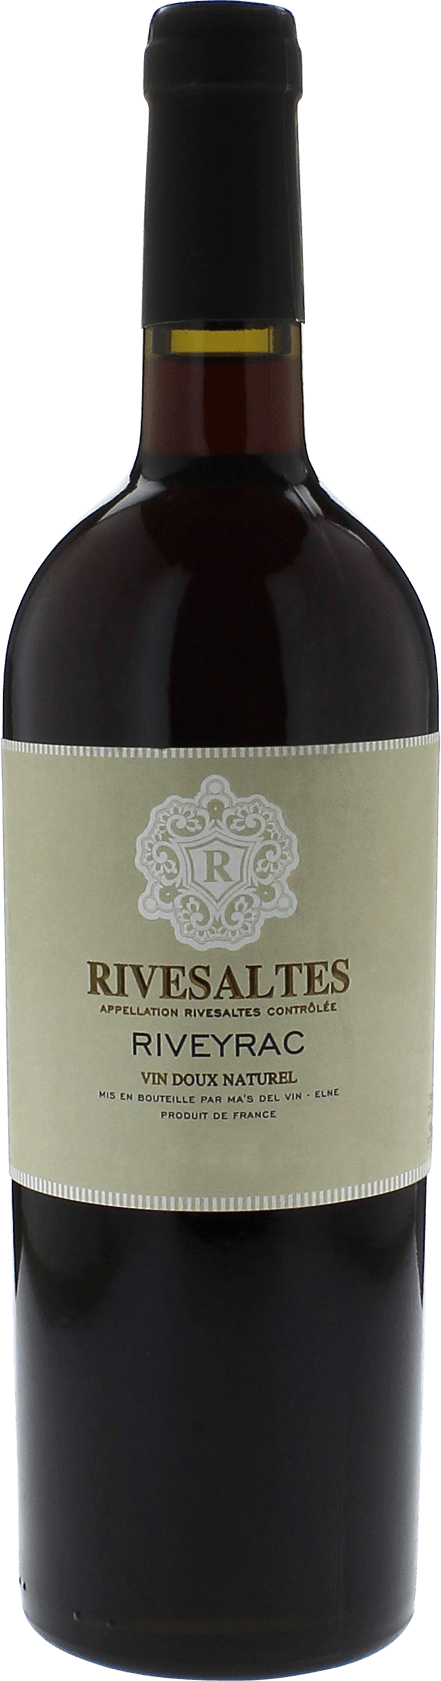 Rivesaltes riveyrac 1984 Vin doux naturel Rivesaltes, Vin doux naturel